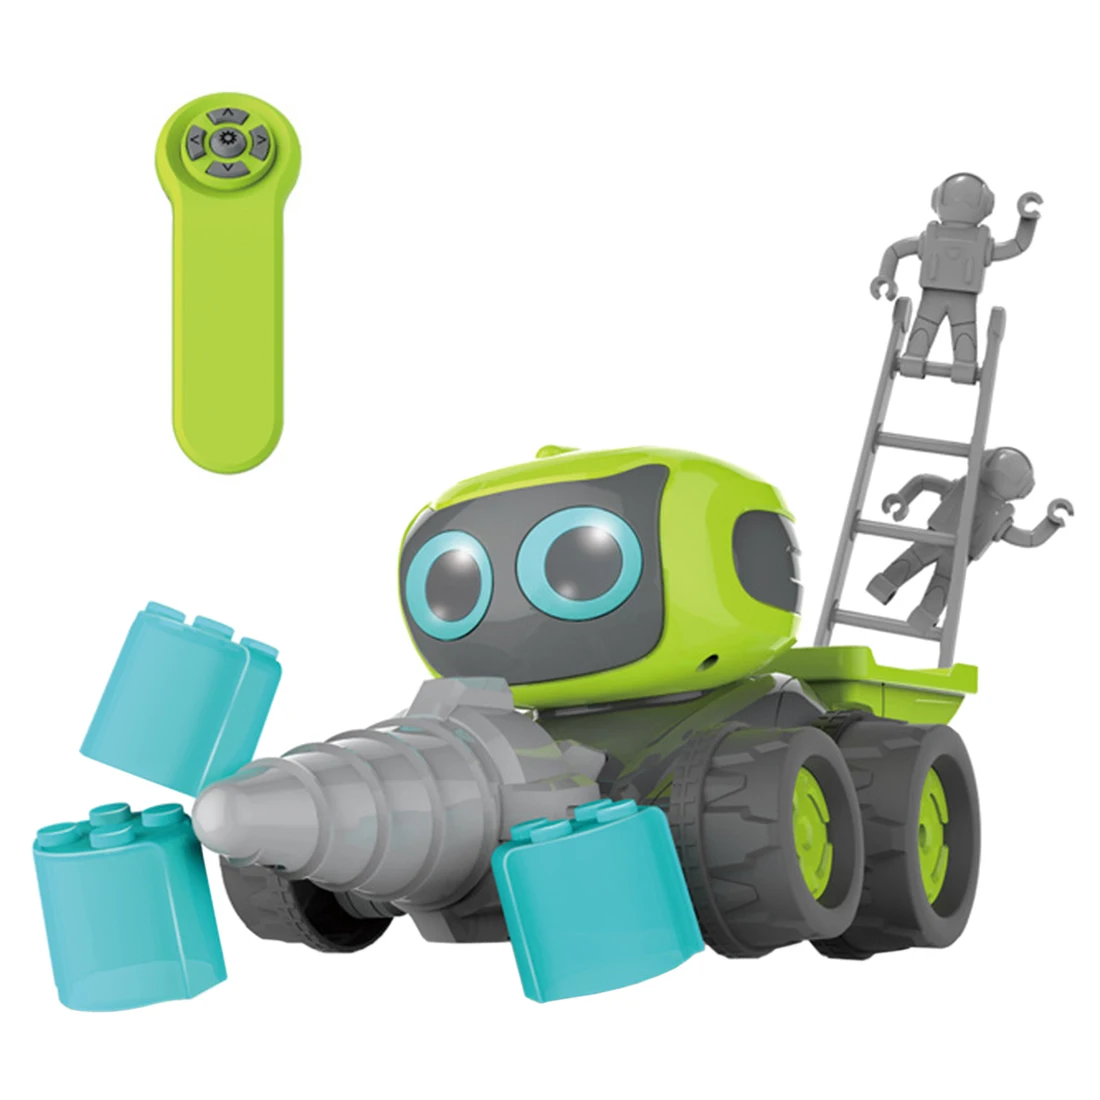 Modiker High Tech игрушка Smart программирования RC робот инженерный бульдозер вилочный погрузчик Ассамблеи Крытый игрушки для детей